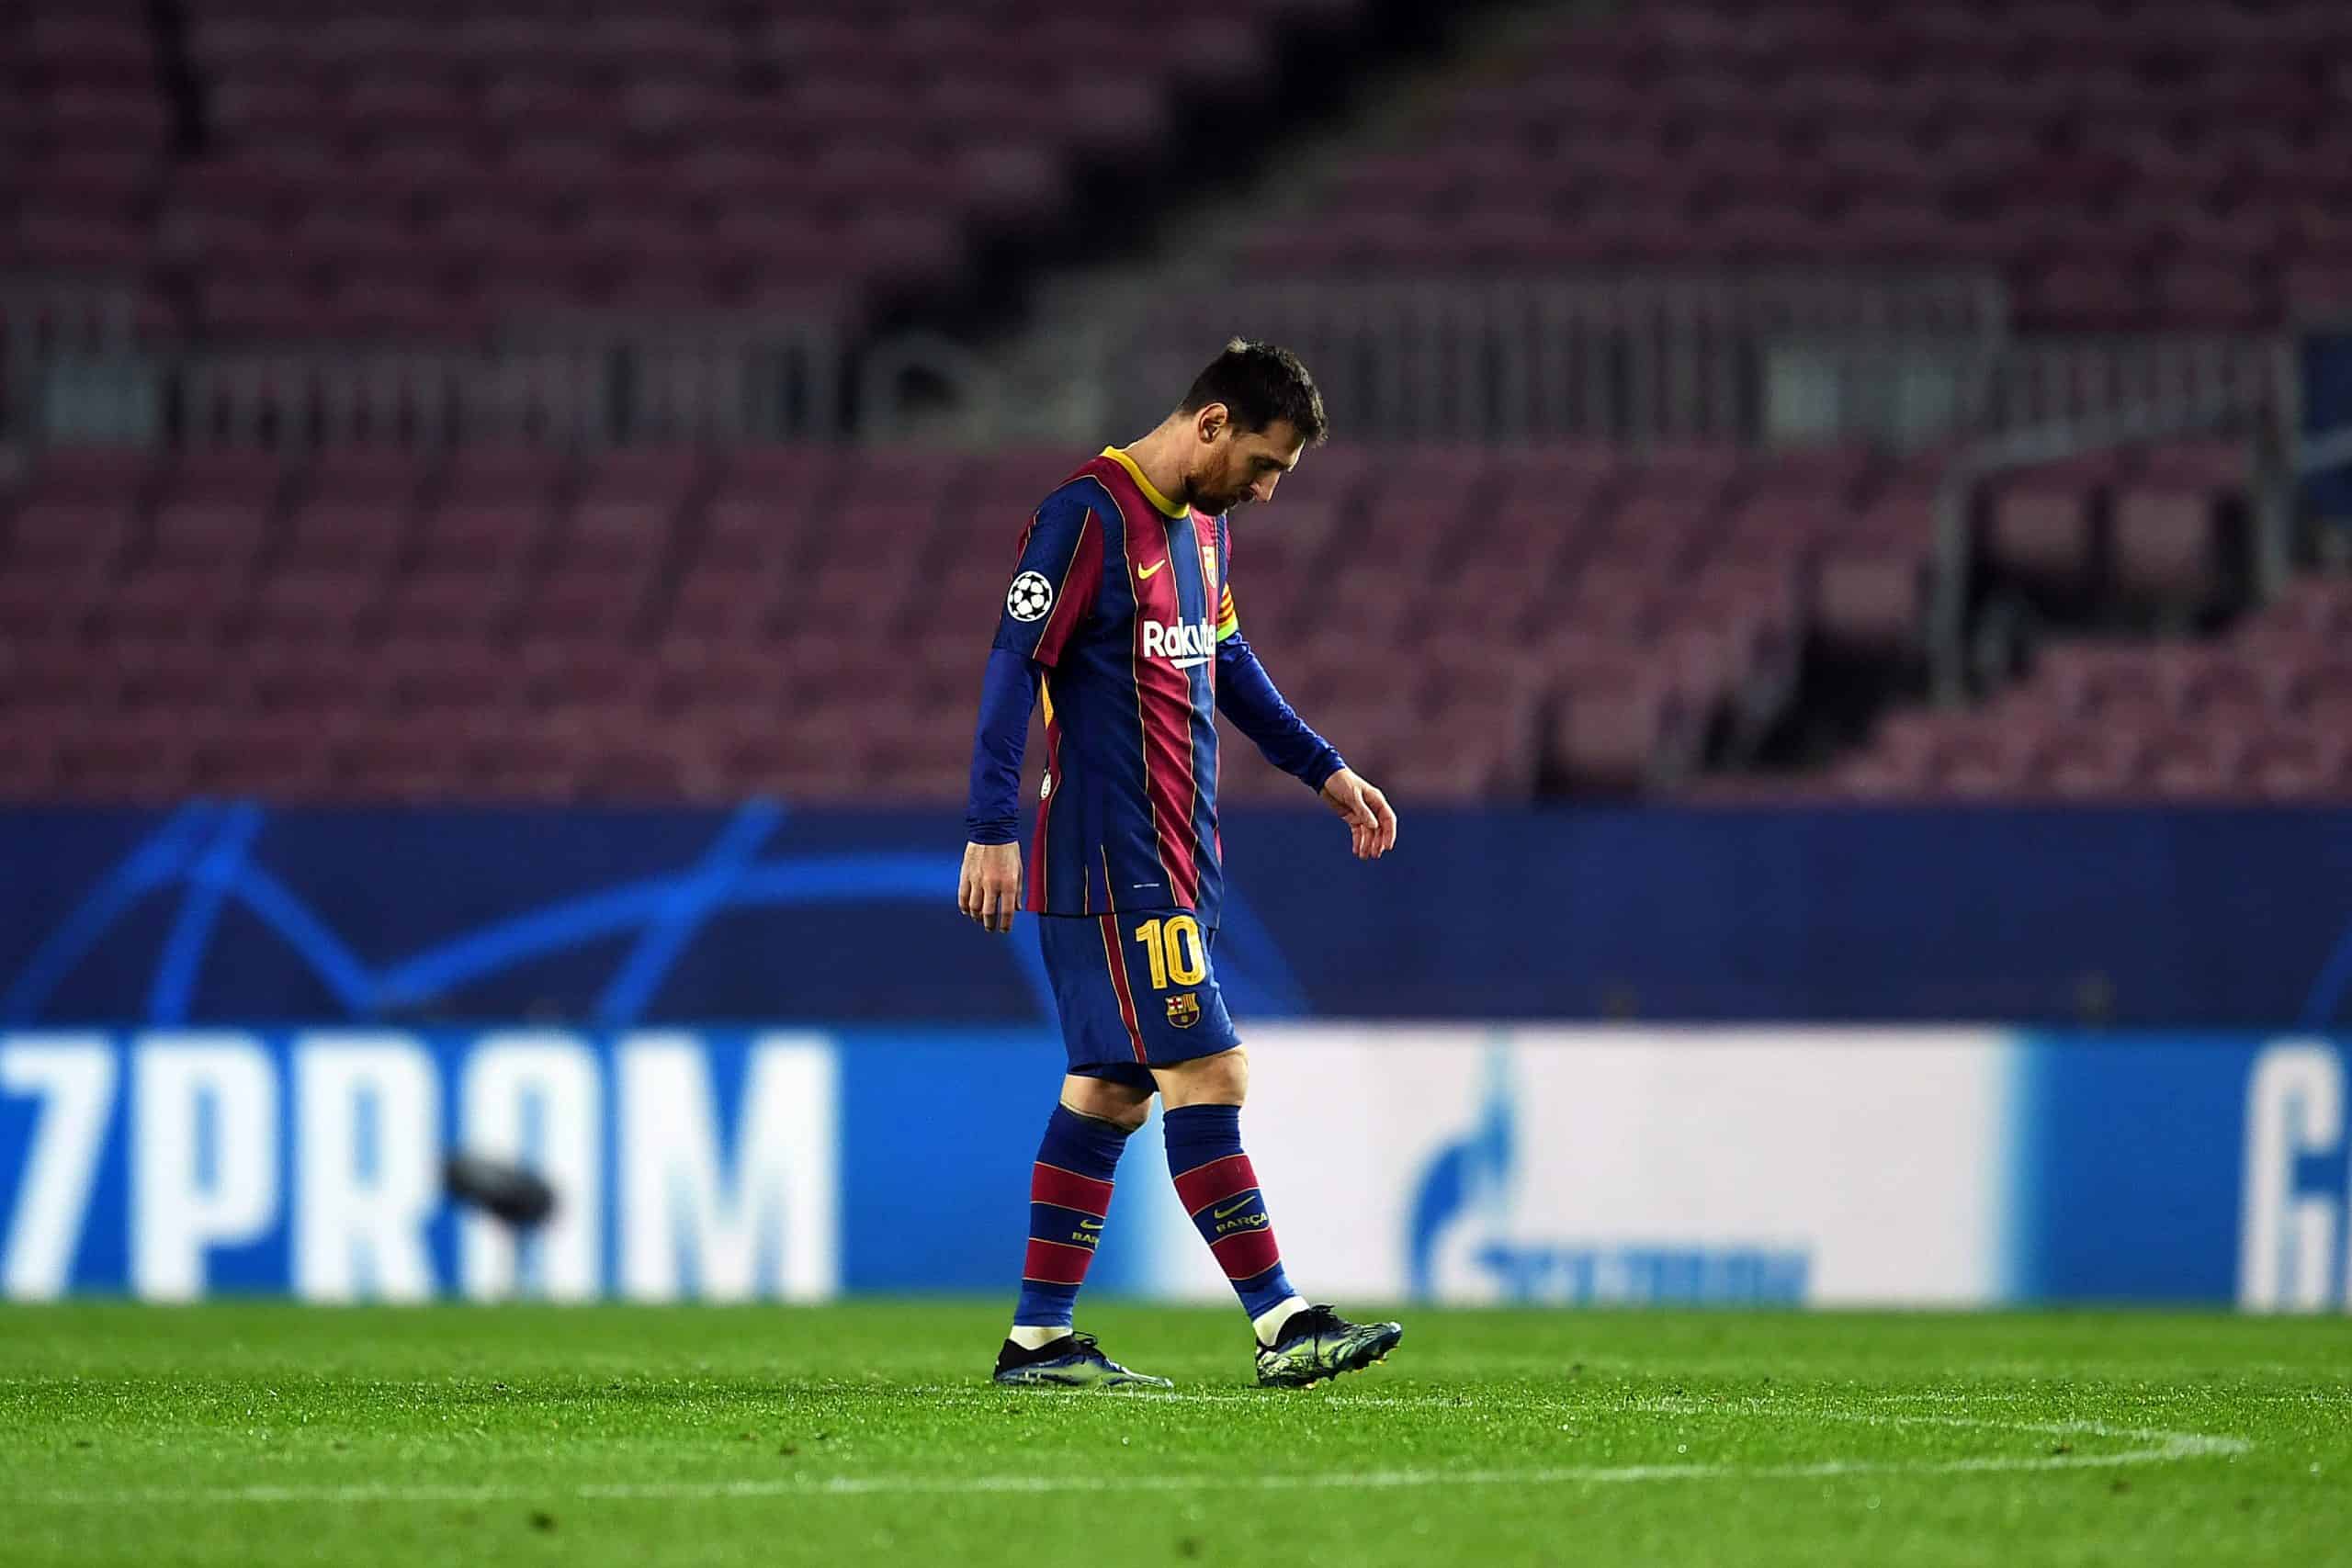 Capturan enojo de Lionel Messi tras gol del PSG al Barcelona en octavos de final de Champions League (VIDEO)